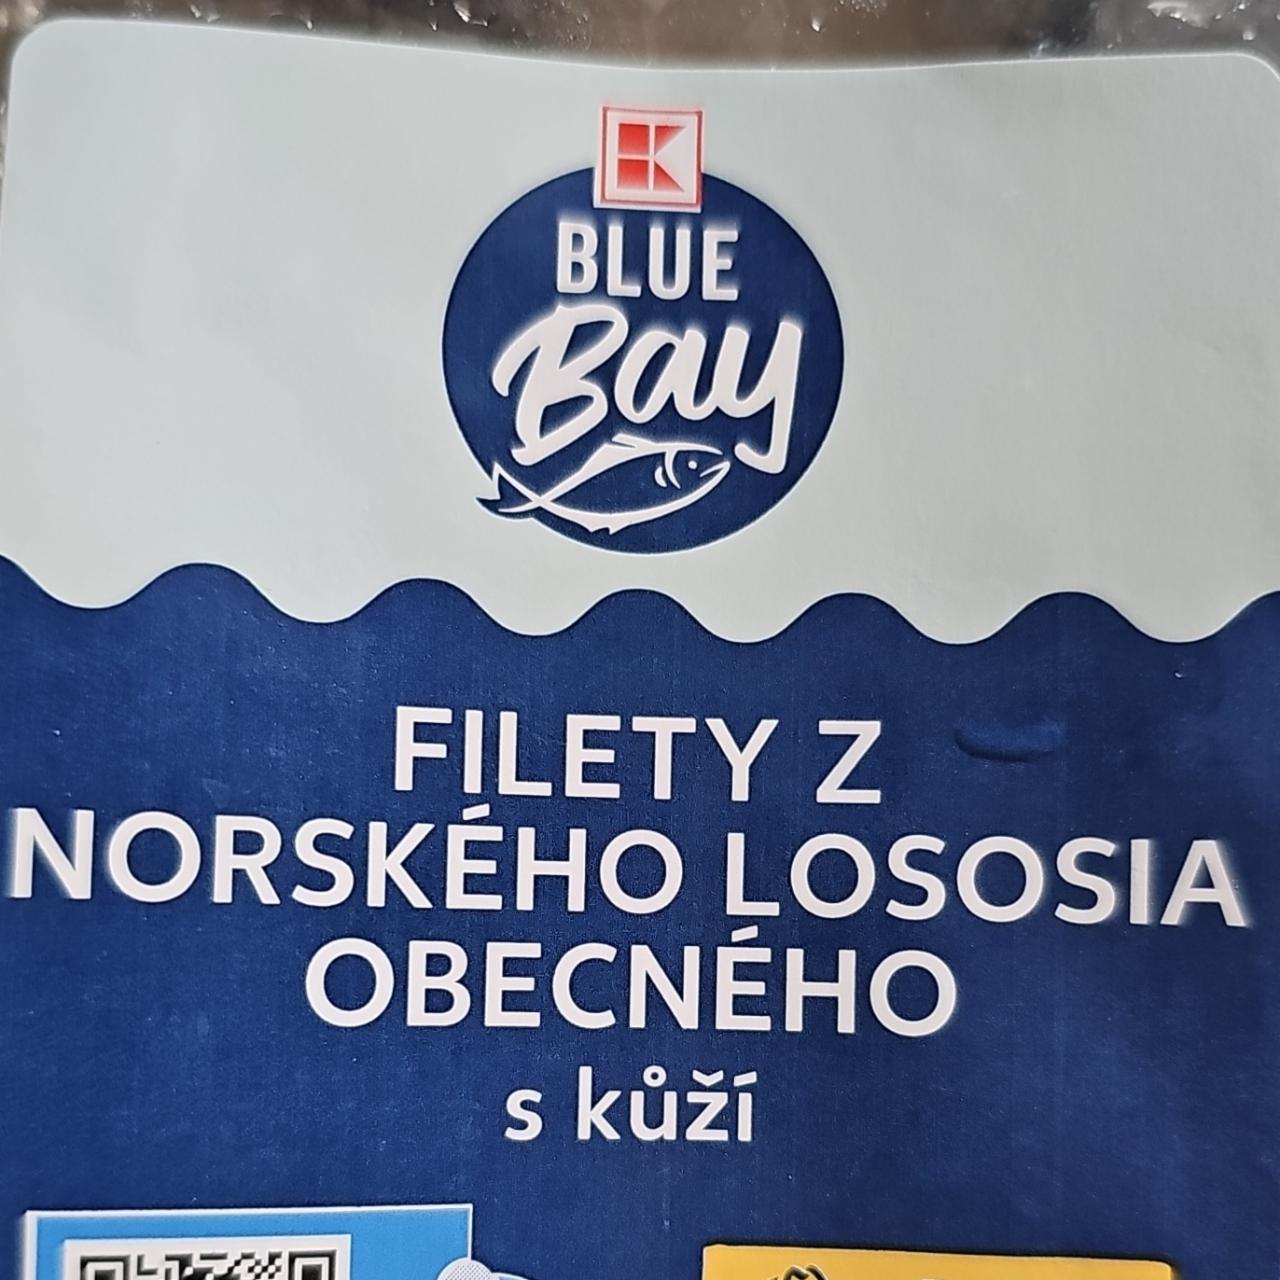 Fotografie - Filety z norského lososa s kůží K Blue bay